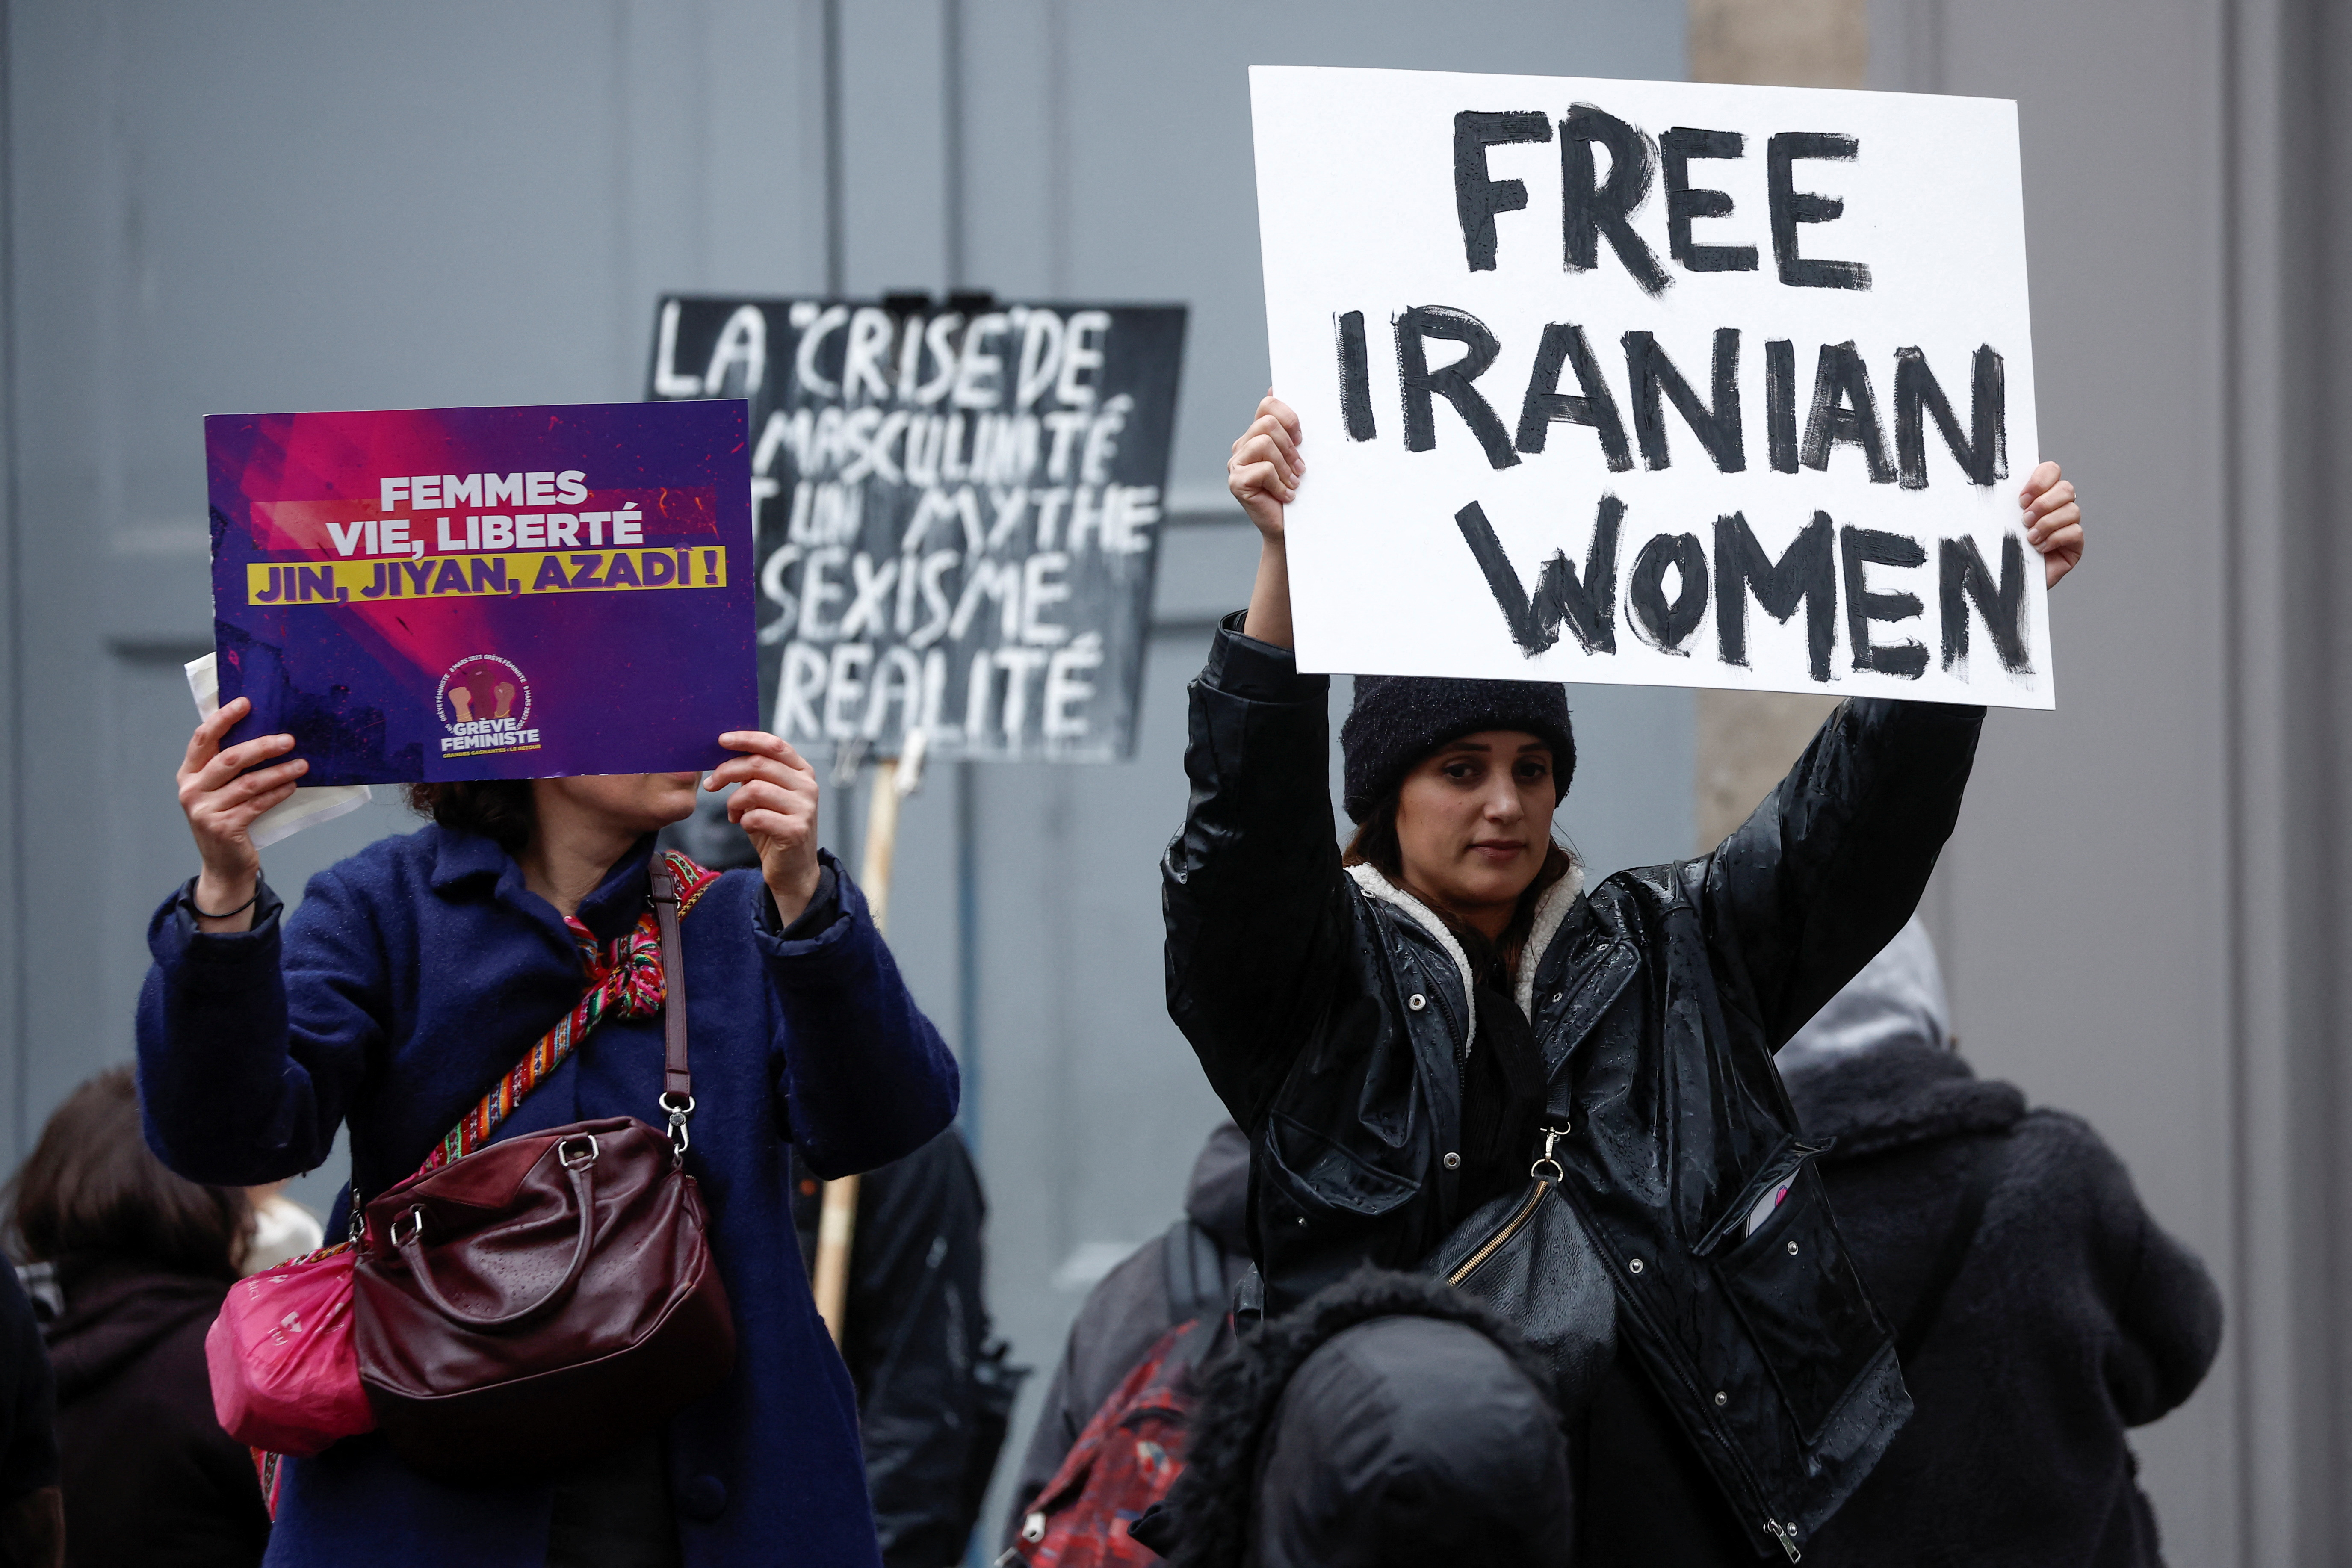 Un grupo de personas sostiene carteles que repudian lo que ocurre con las mujeres en Irán. "Liberen a las mujeres iraníes".